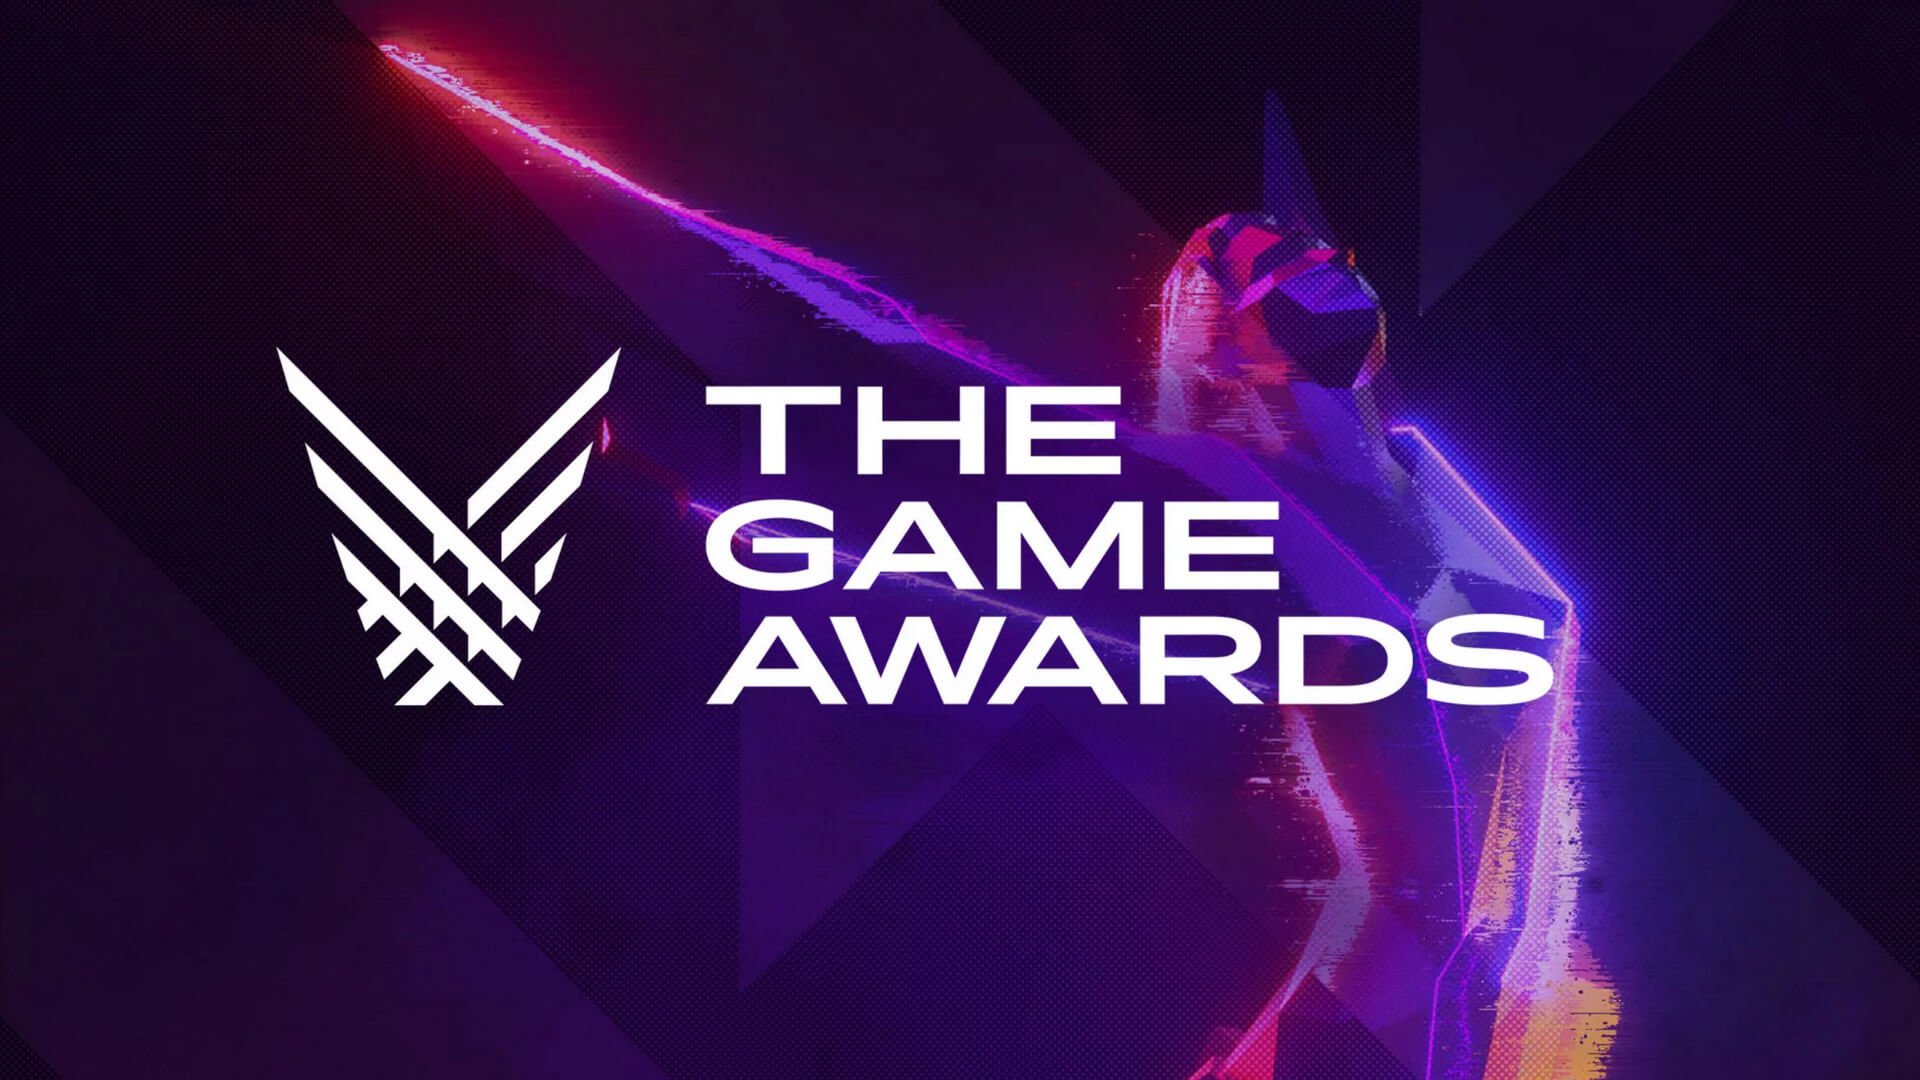 Game Awards 2019